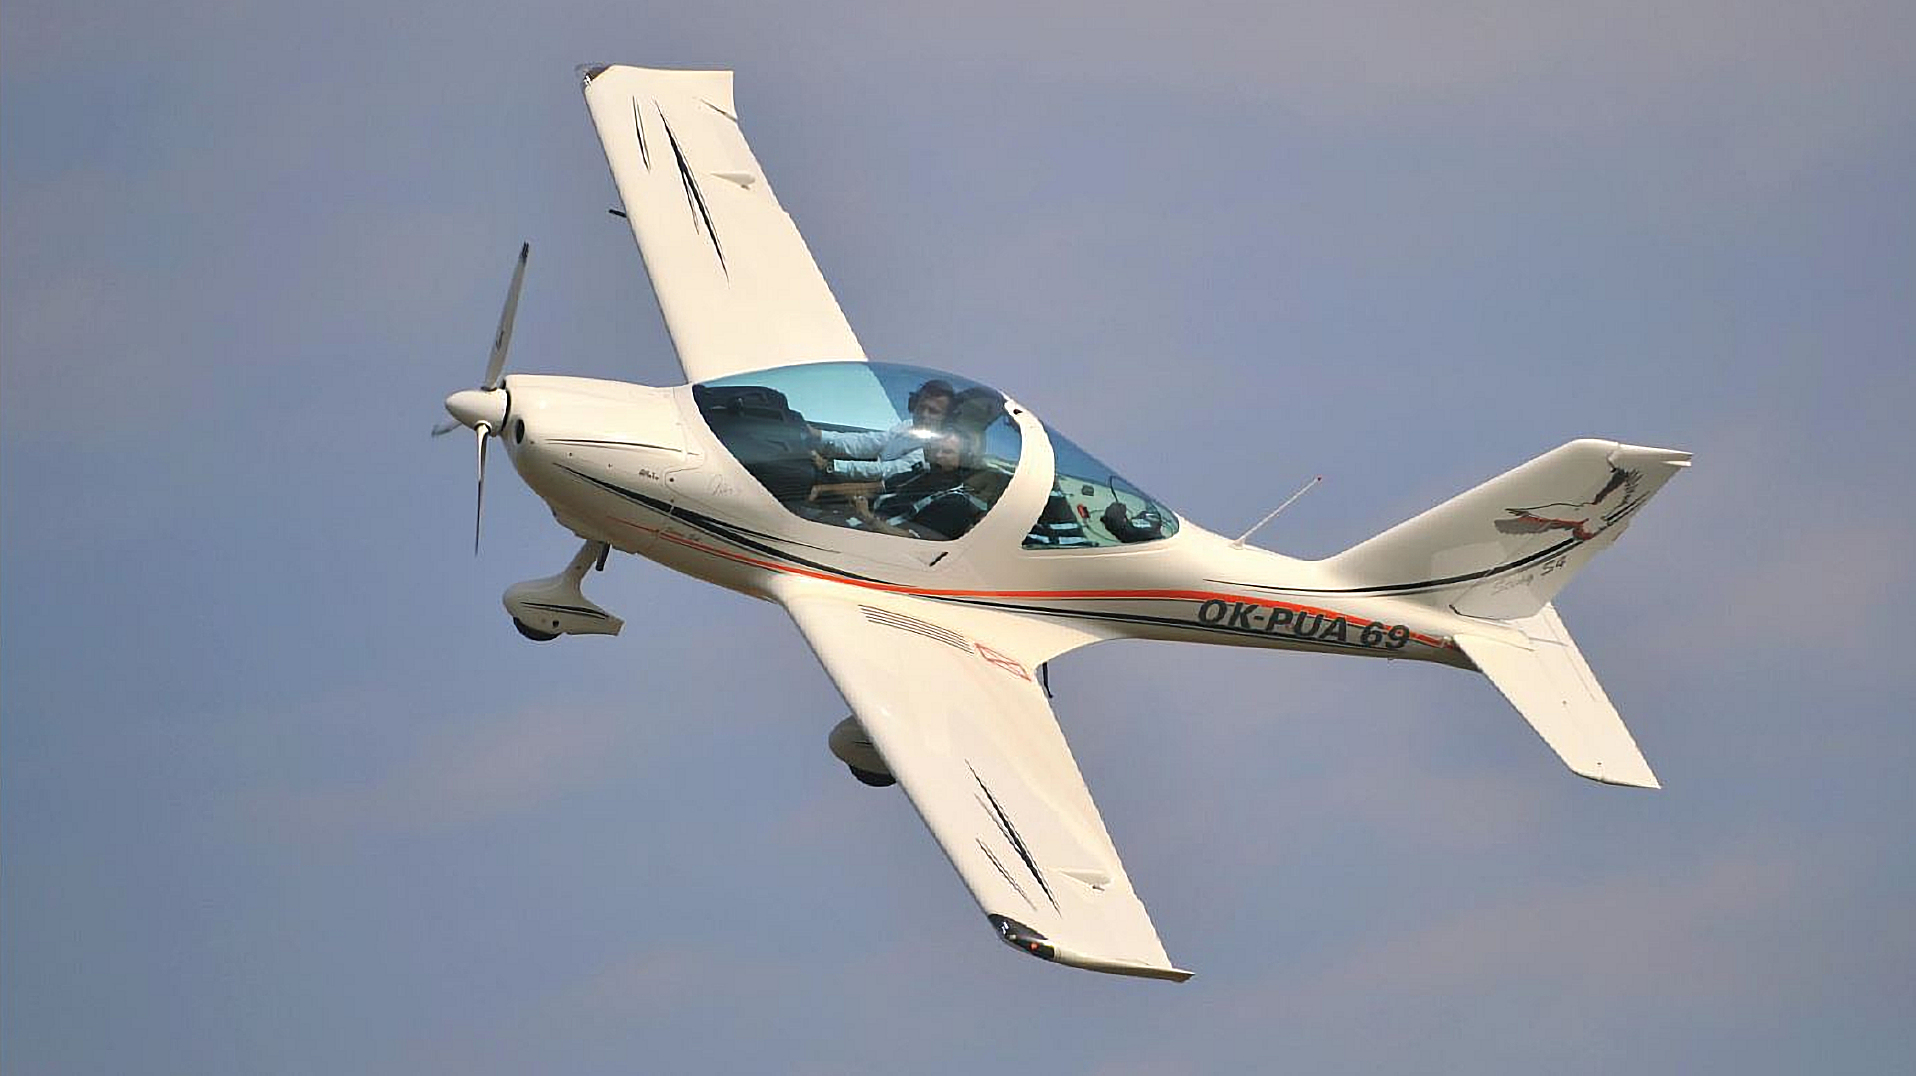 Le Sting S4 de Saumur Air Club es tparfait pour apprendre à piloter un avion ultra-léger